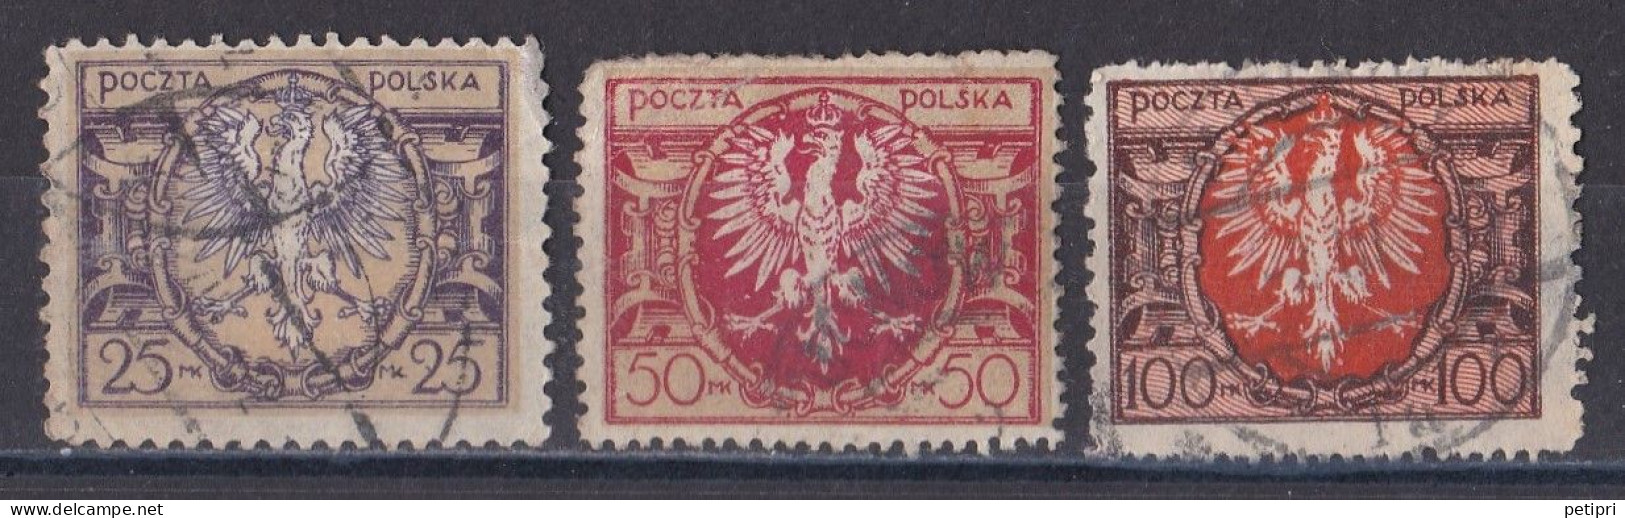 Pologne - République 1919  -  1939   Y & T N °  227   228   229  Oblitérés - Oblitérés